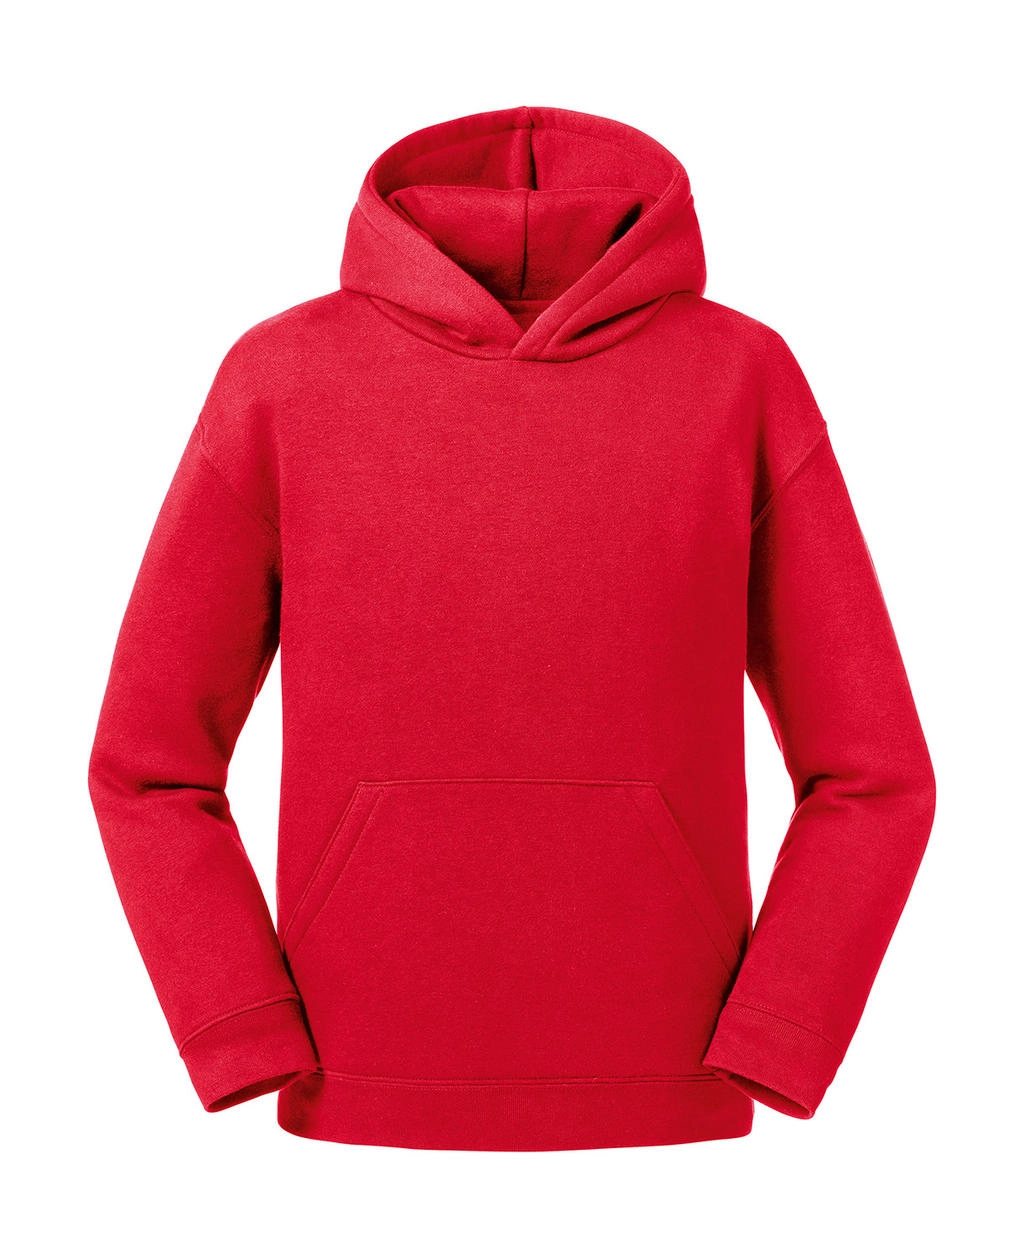 Kids` Authentic Hooded Sweat zum Besticken und Bedrucken in der Farbe Classic Red mit Ihren Logo, Schriftzug oder Motiv.